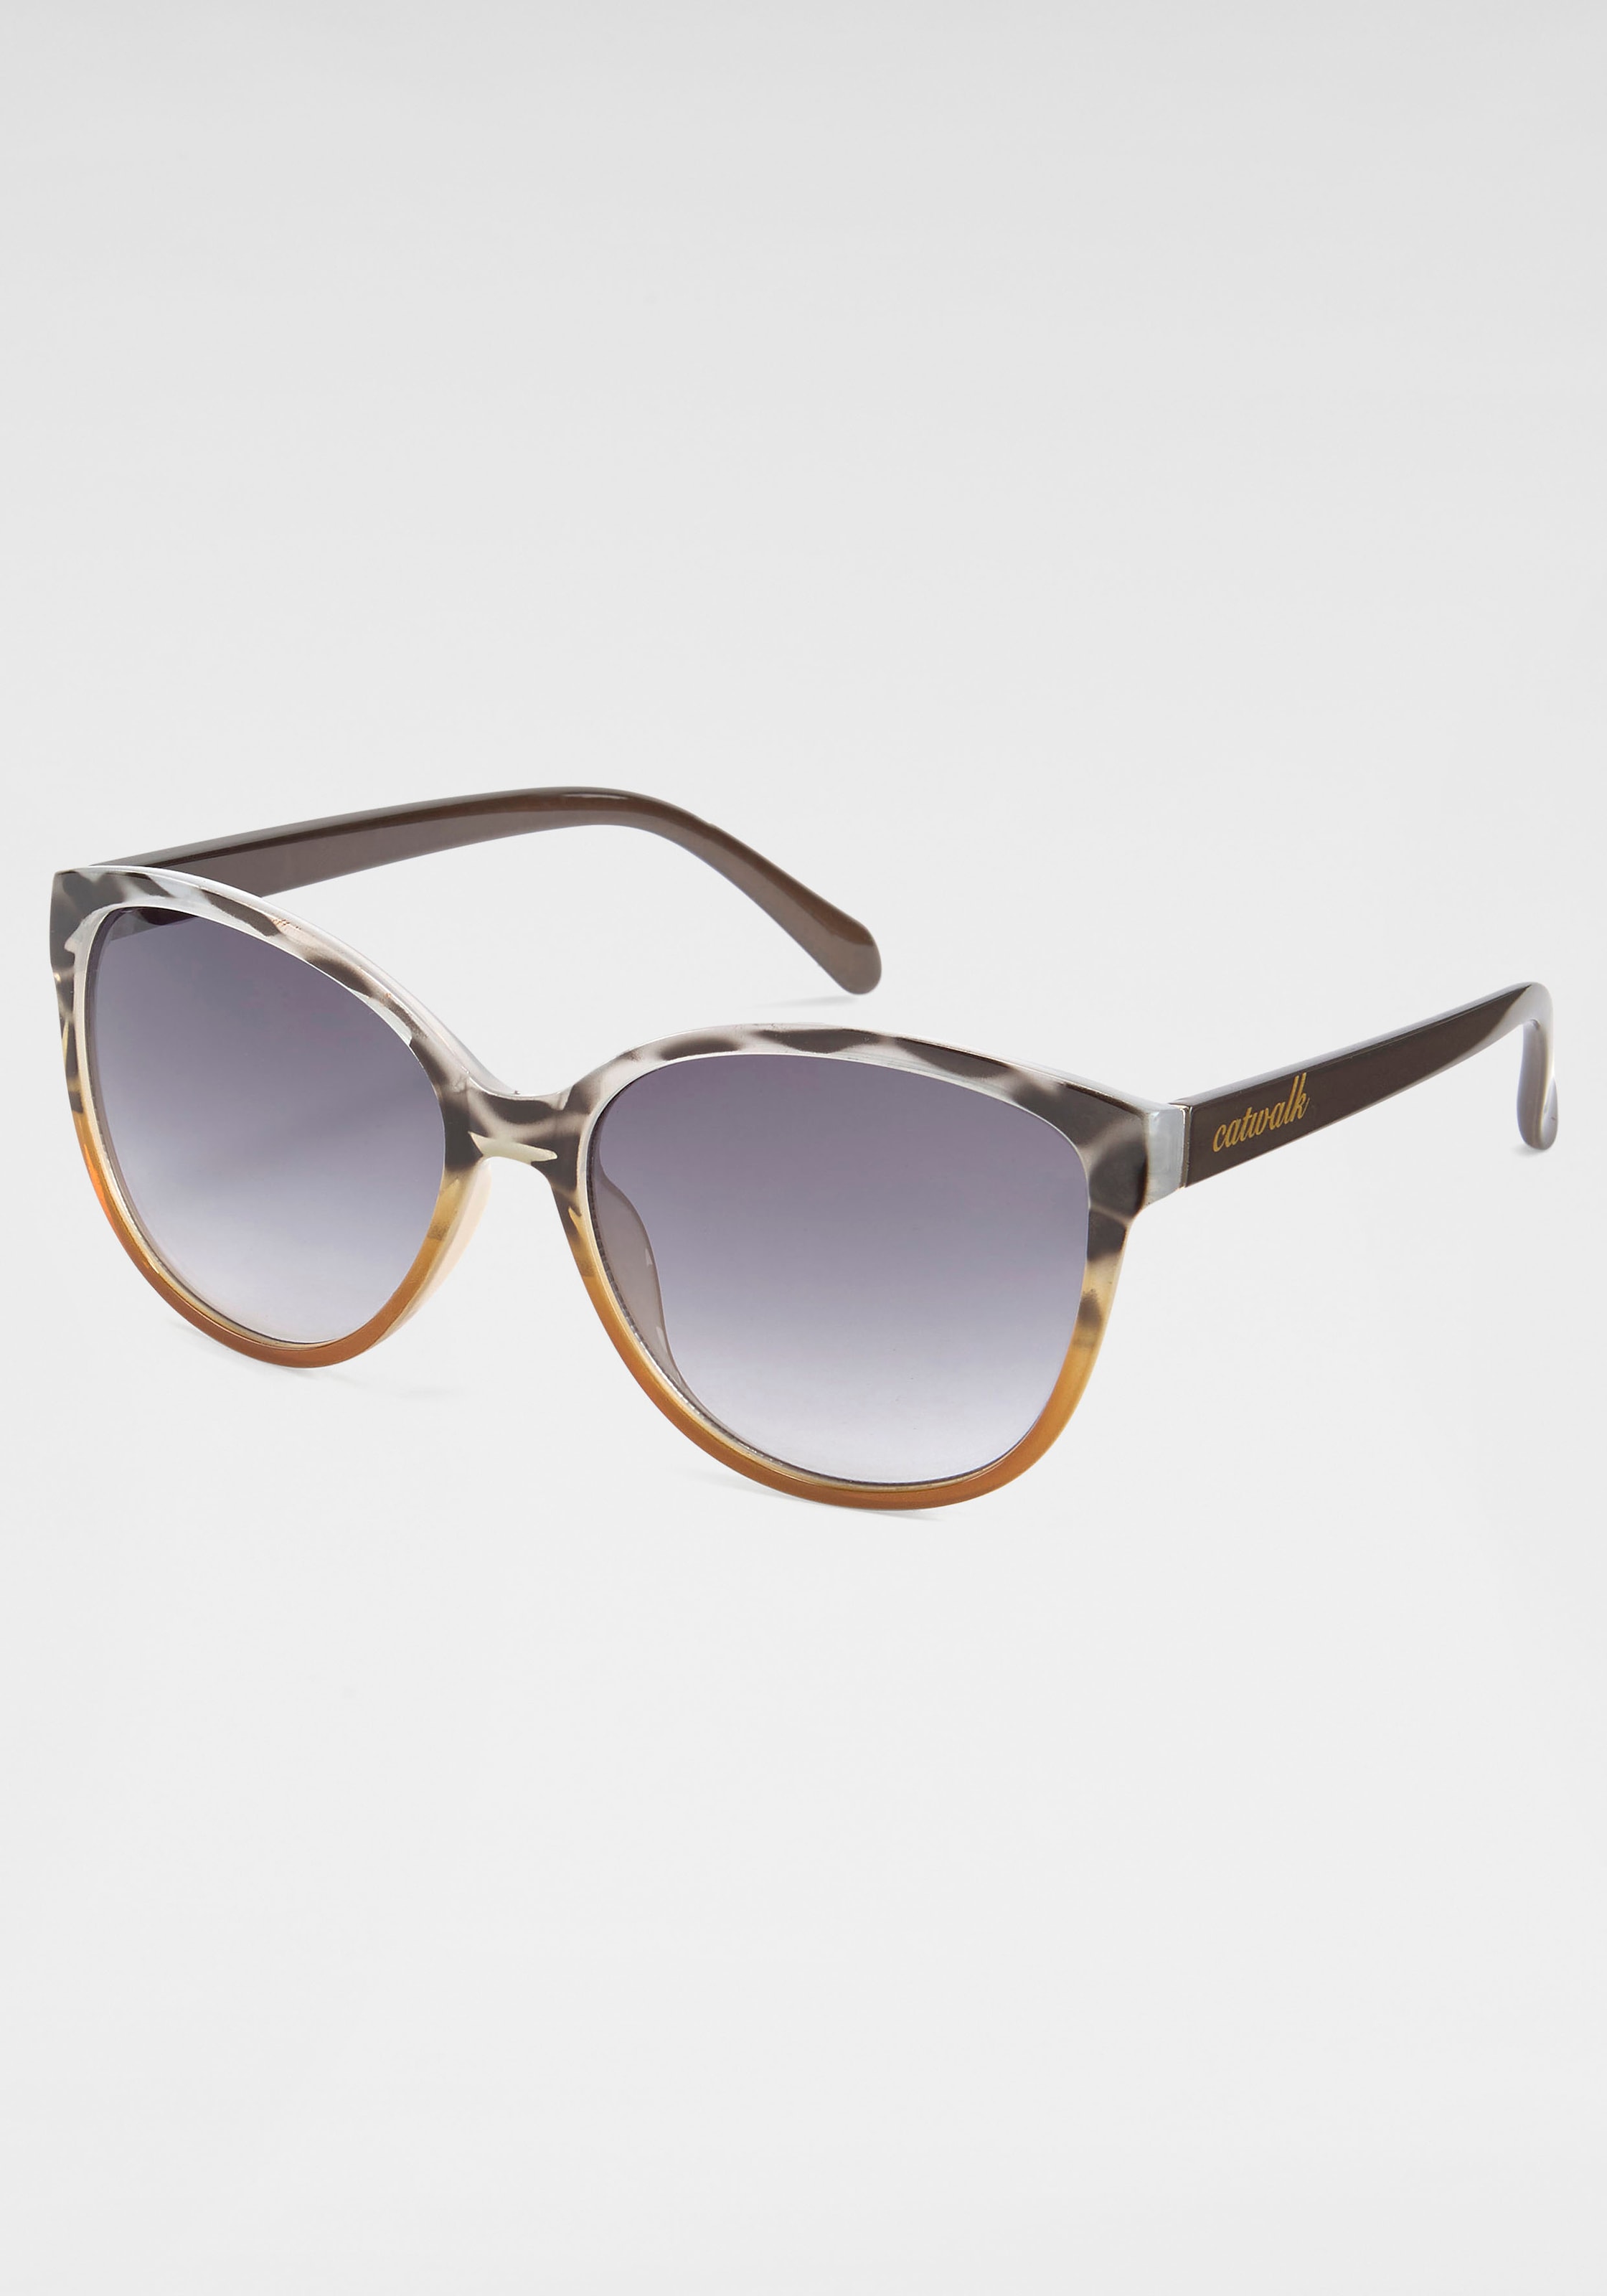 Sonnenbrille bei bestellen Eyewear Jelmoli-Versand online catwalk Schweiz